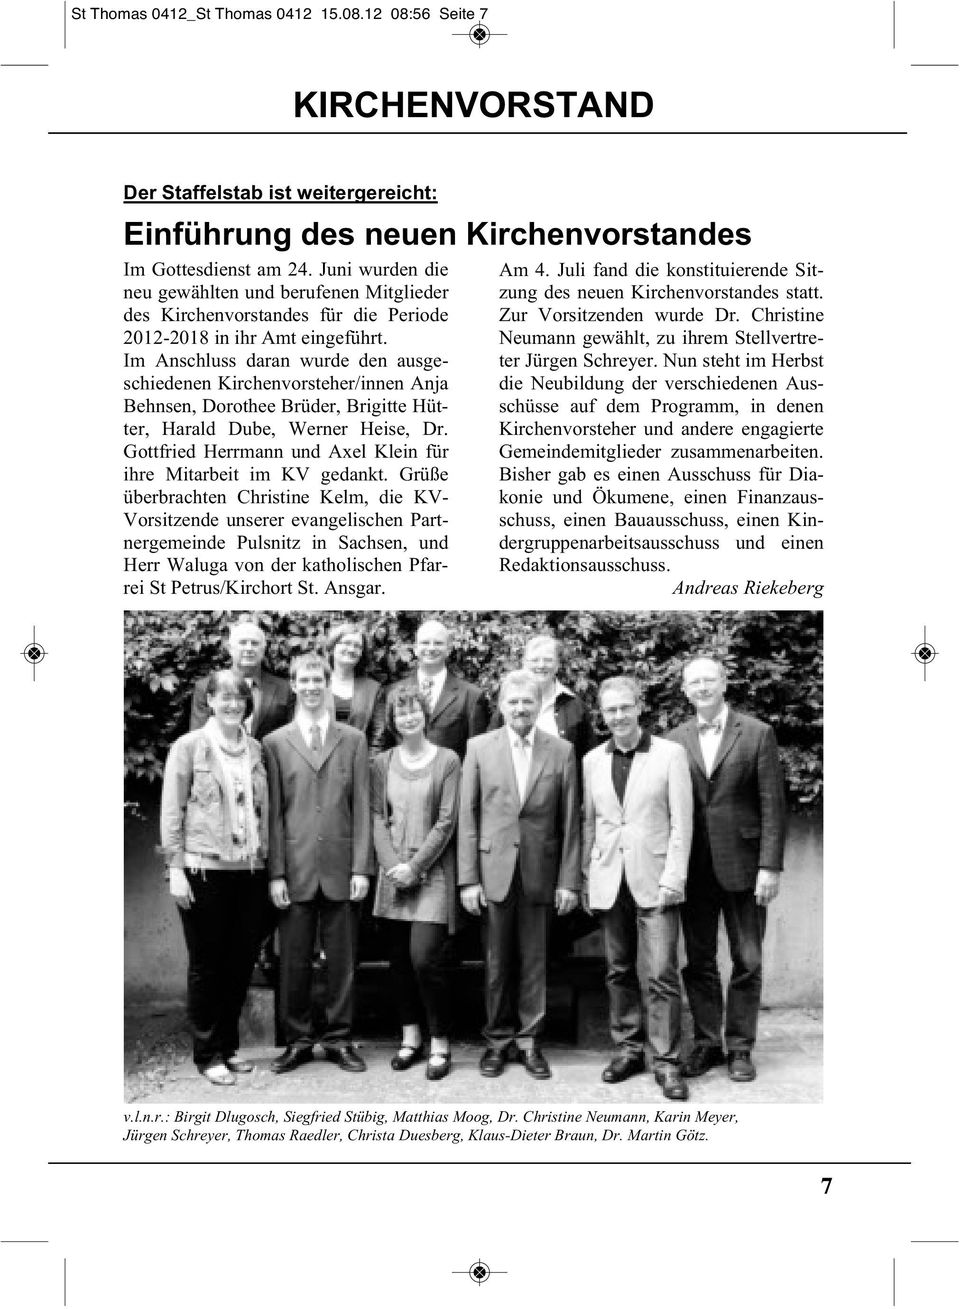 Im Anschluss daran wurde den ausgeschiedenen Kirchenvorsteher/innen Anja Behnsen, Dorothee Brüder, Brigitte Hütter, Harald Dube, Werner Heise, Dr.